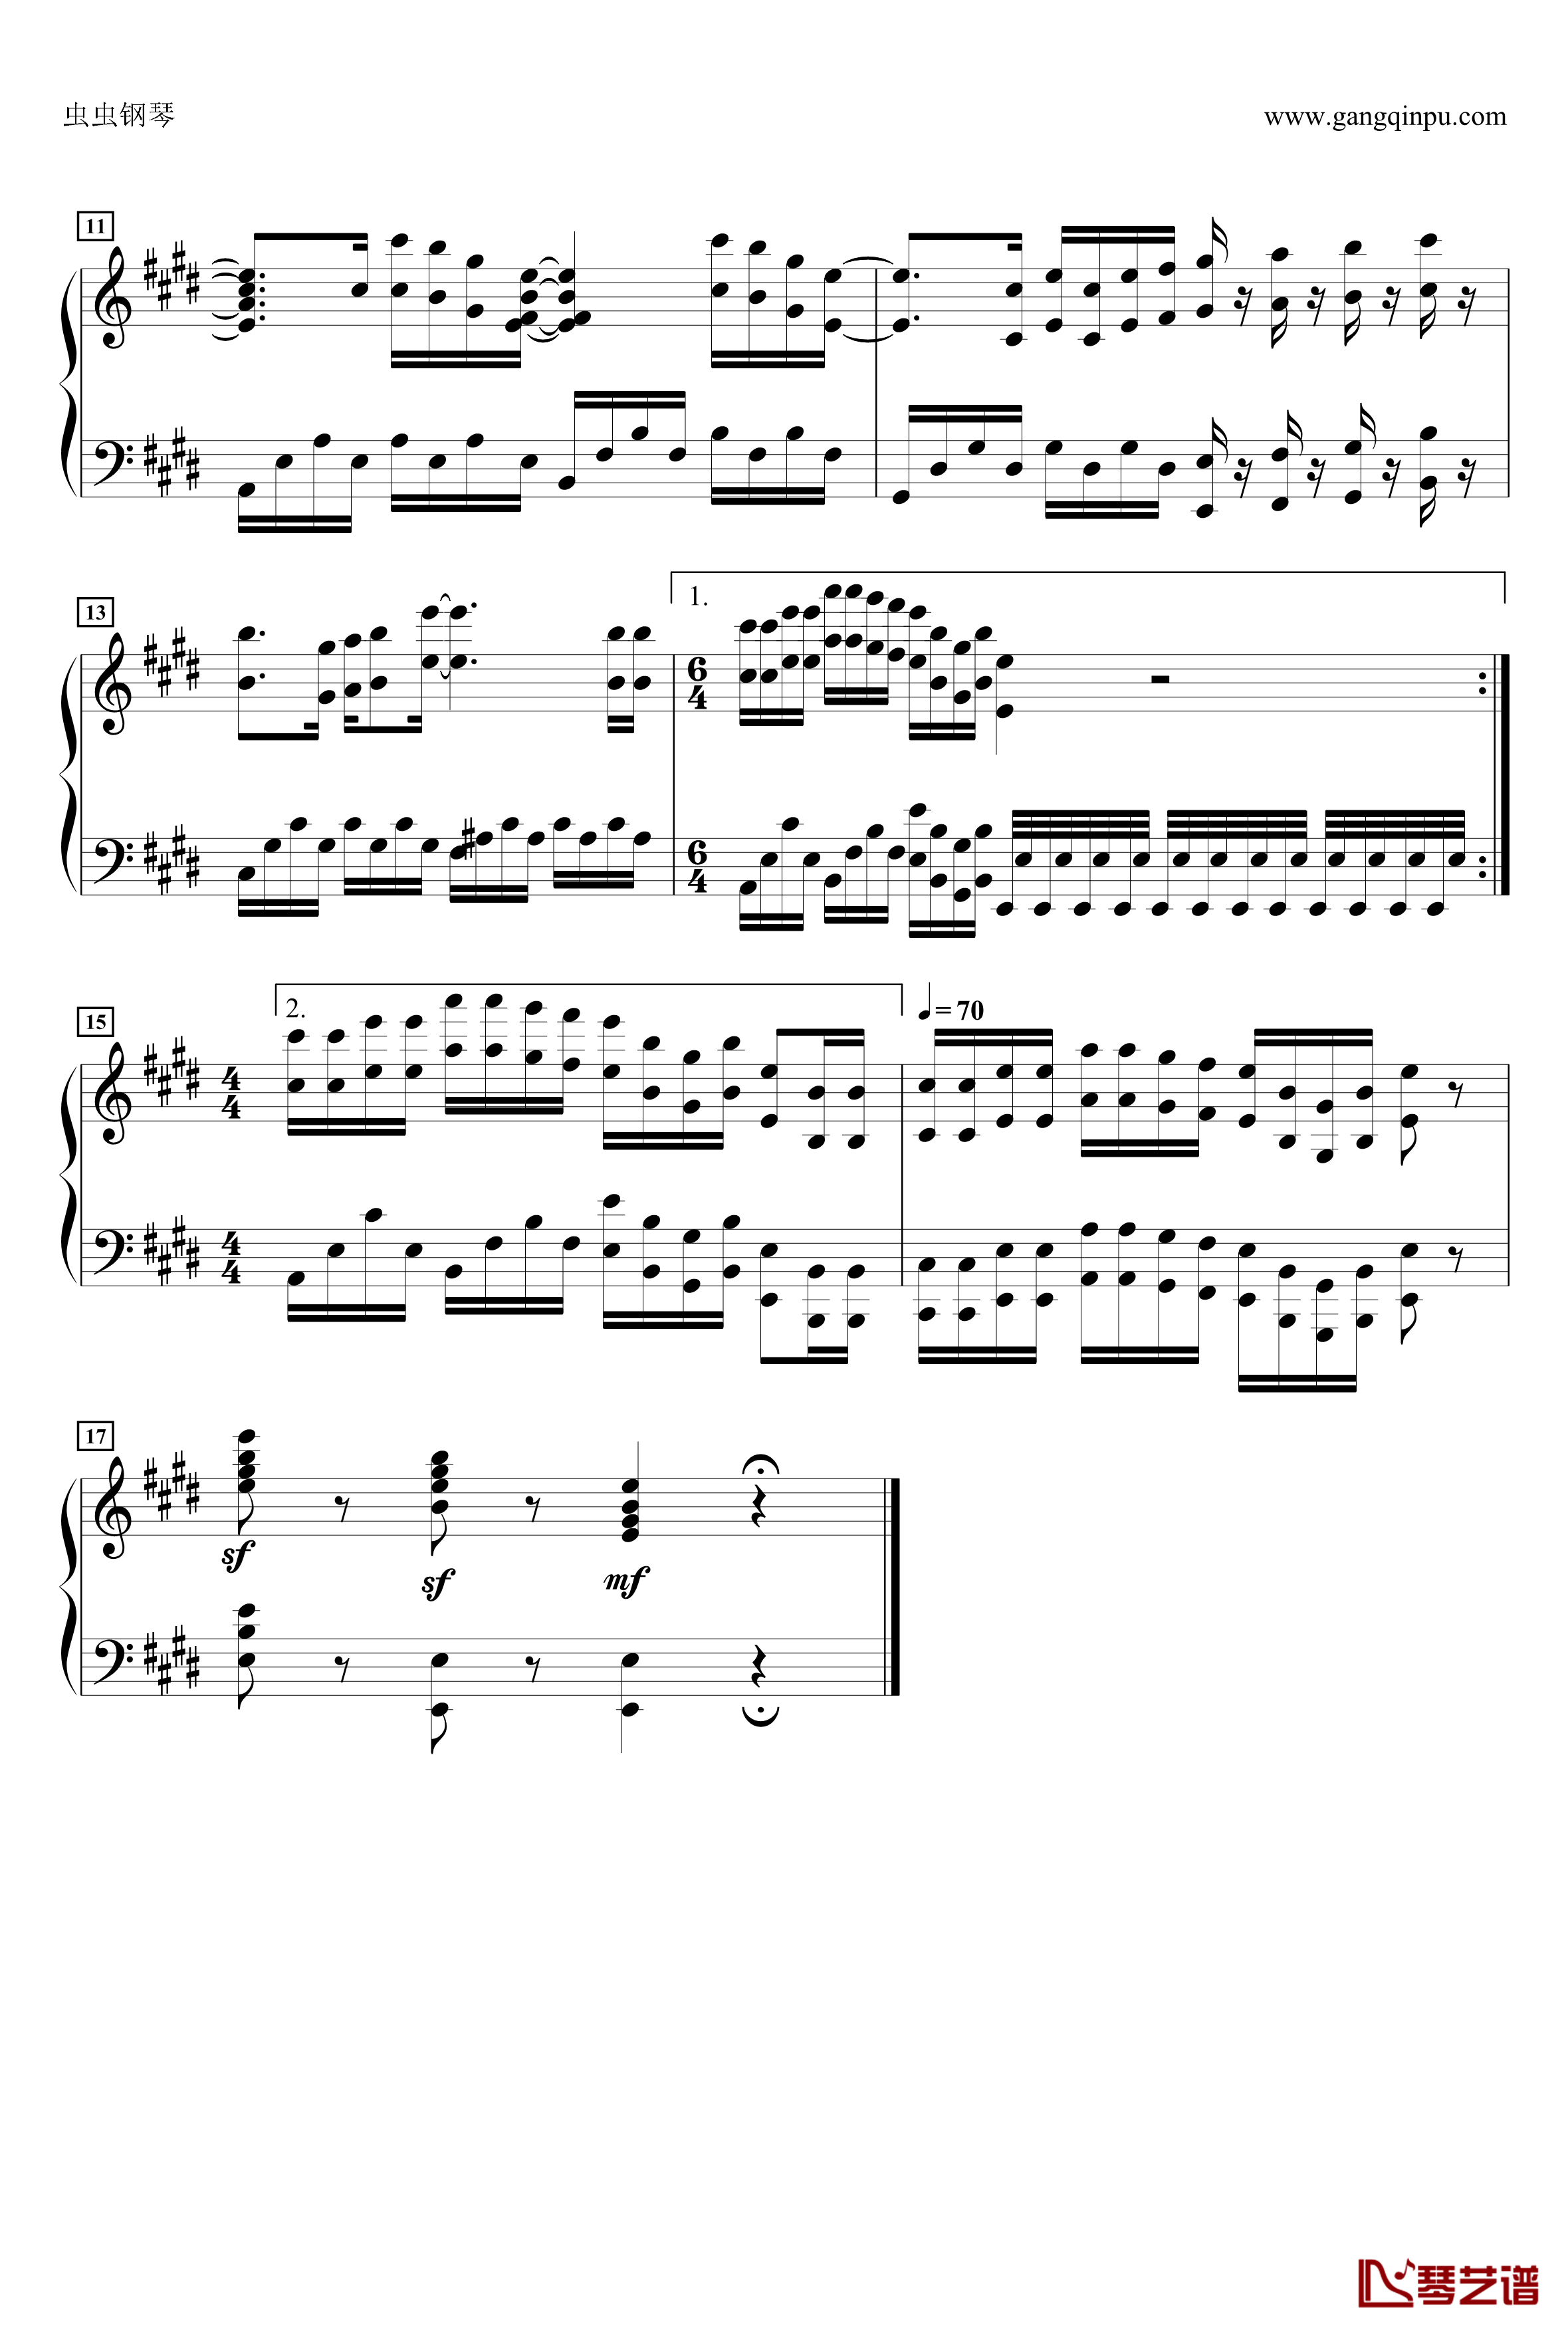 上课小动作钢琴谱-迷惑スペクタクル2